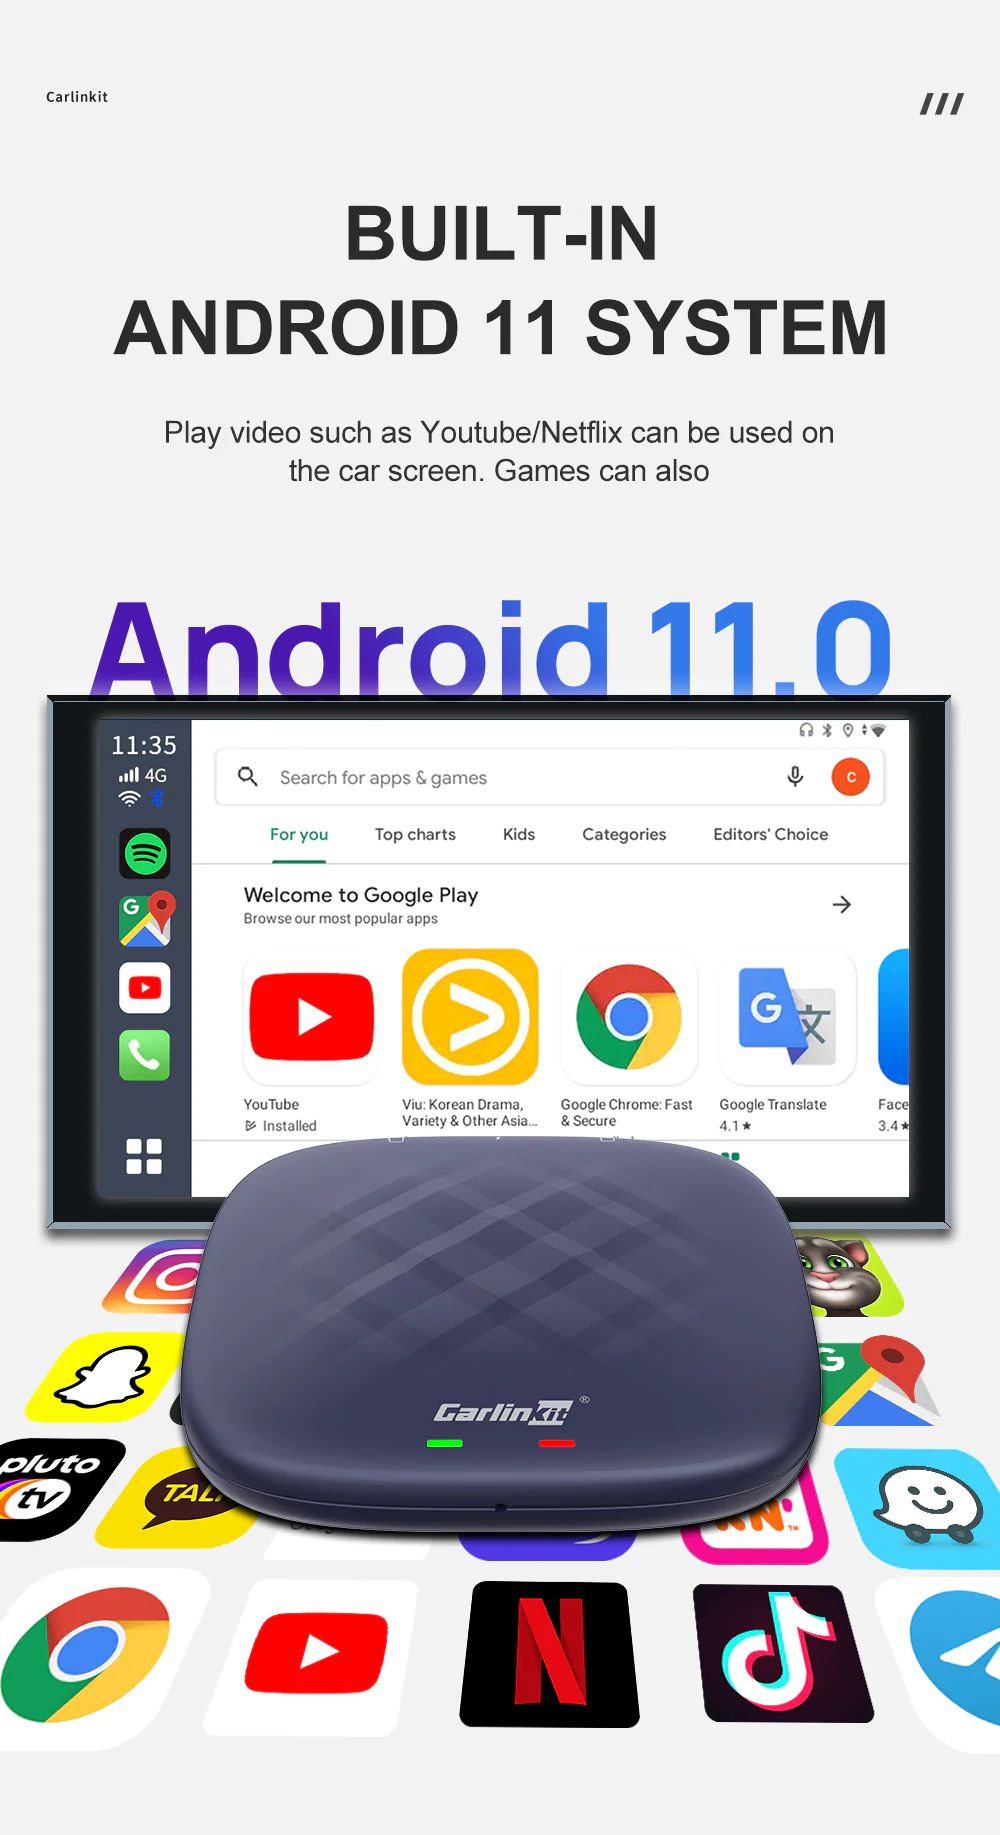 Carlinkit TBox Plus, phiên bản mới nhất sử dụng chip Snapdragon 665, hệ điều hành Android 11, hiệu năng cao